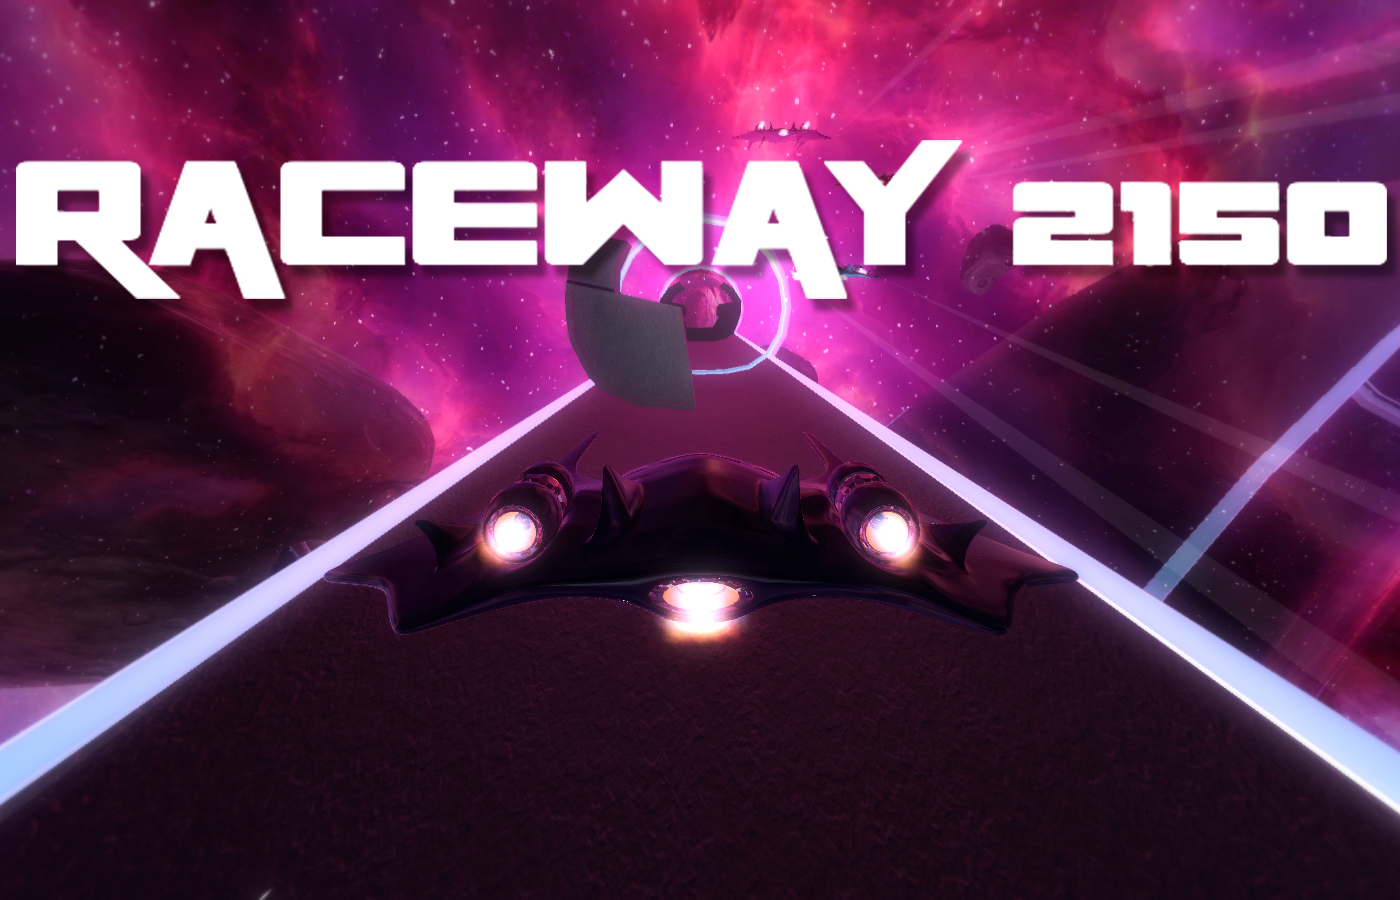 Raceway 2150